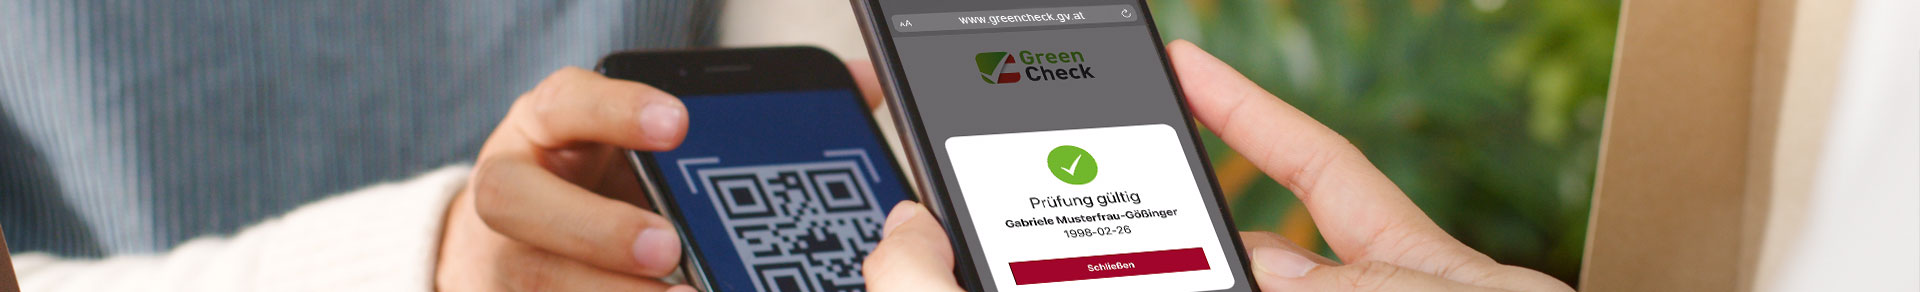 FAQ GreenCheck-Anwendung